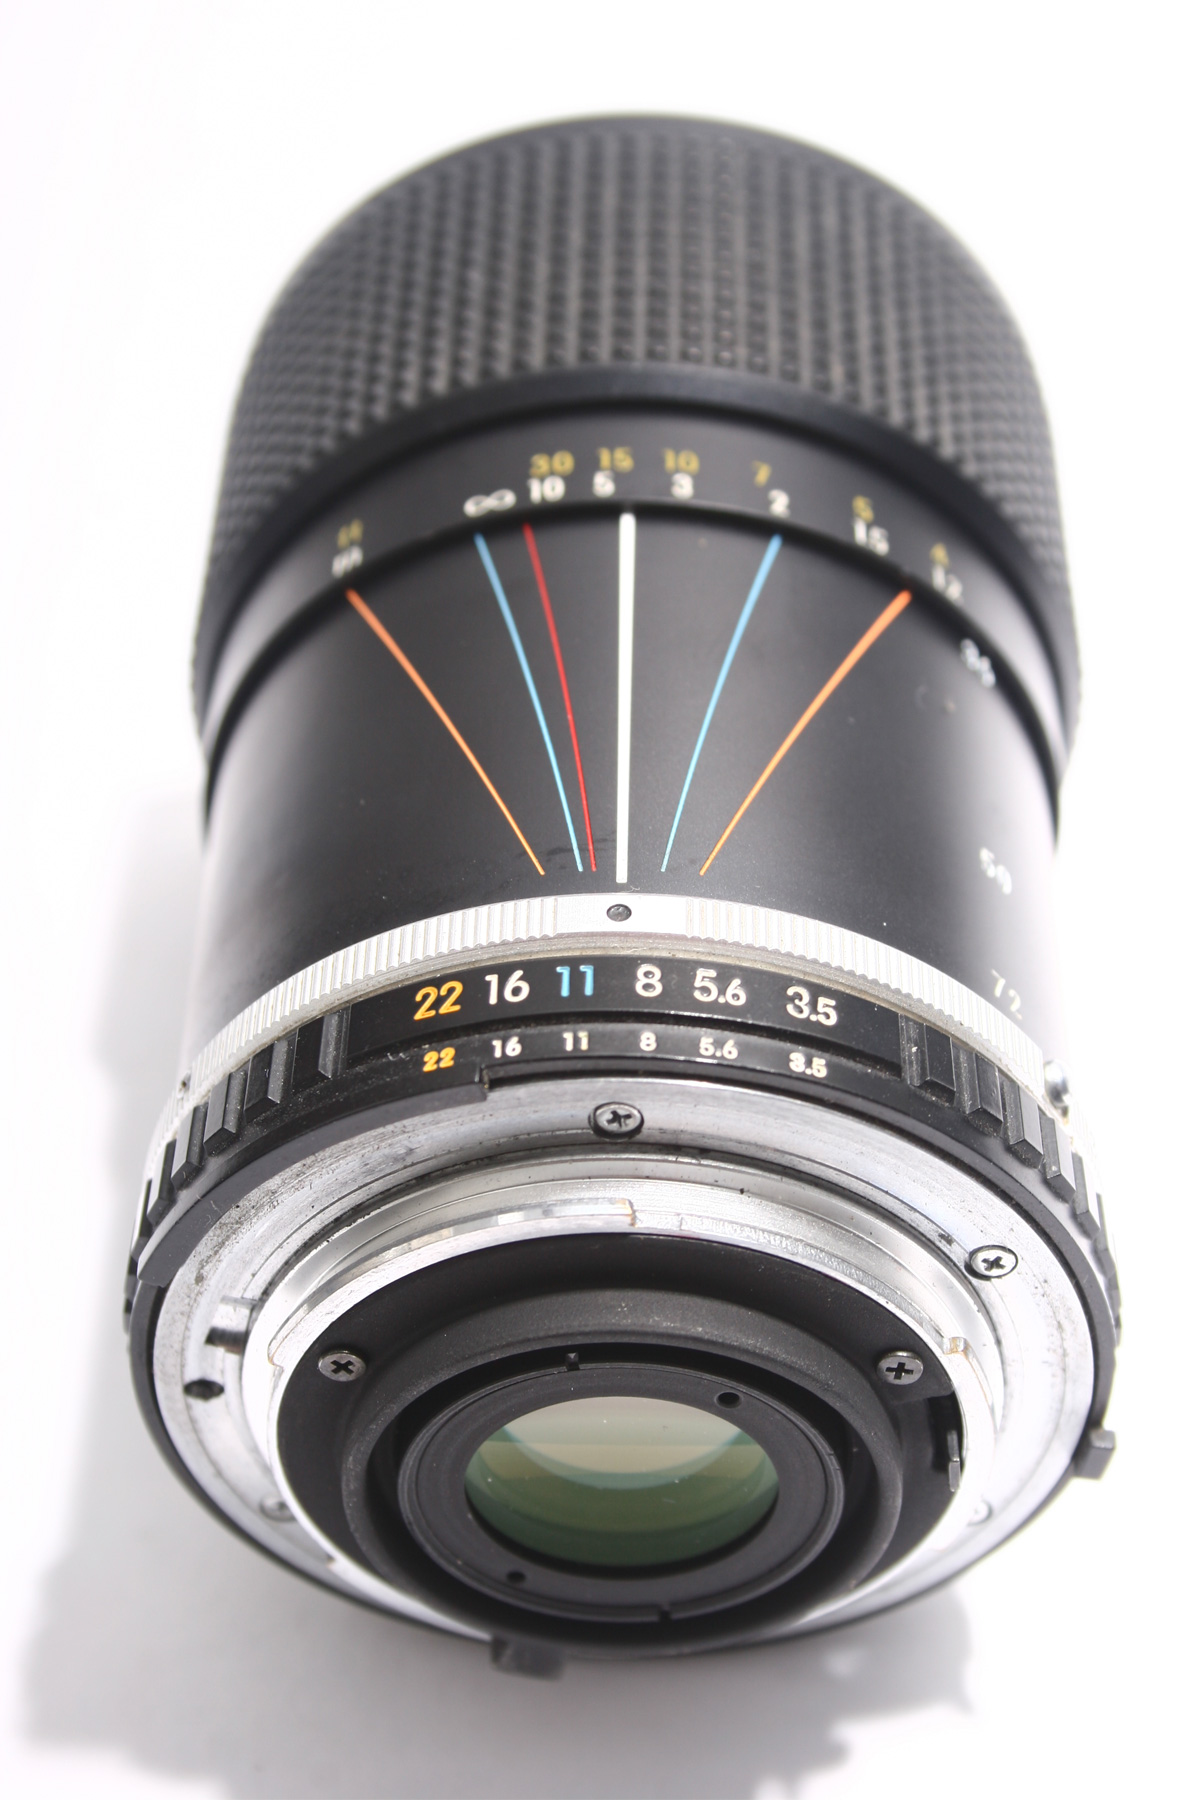 Lens reflex camera